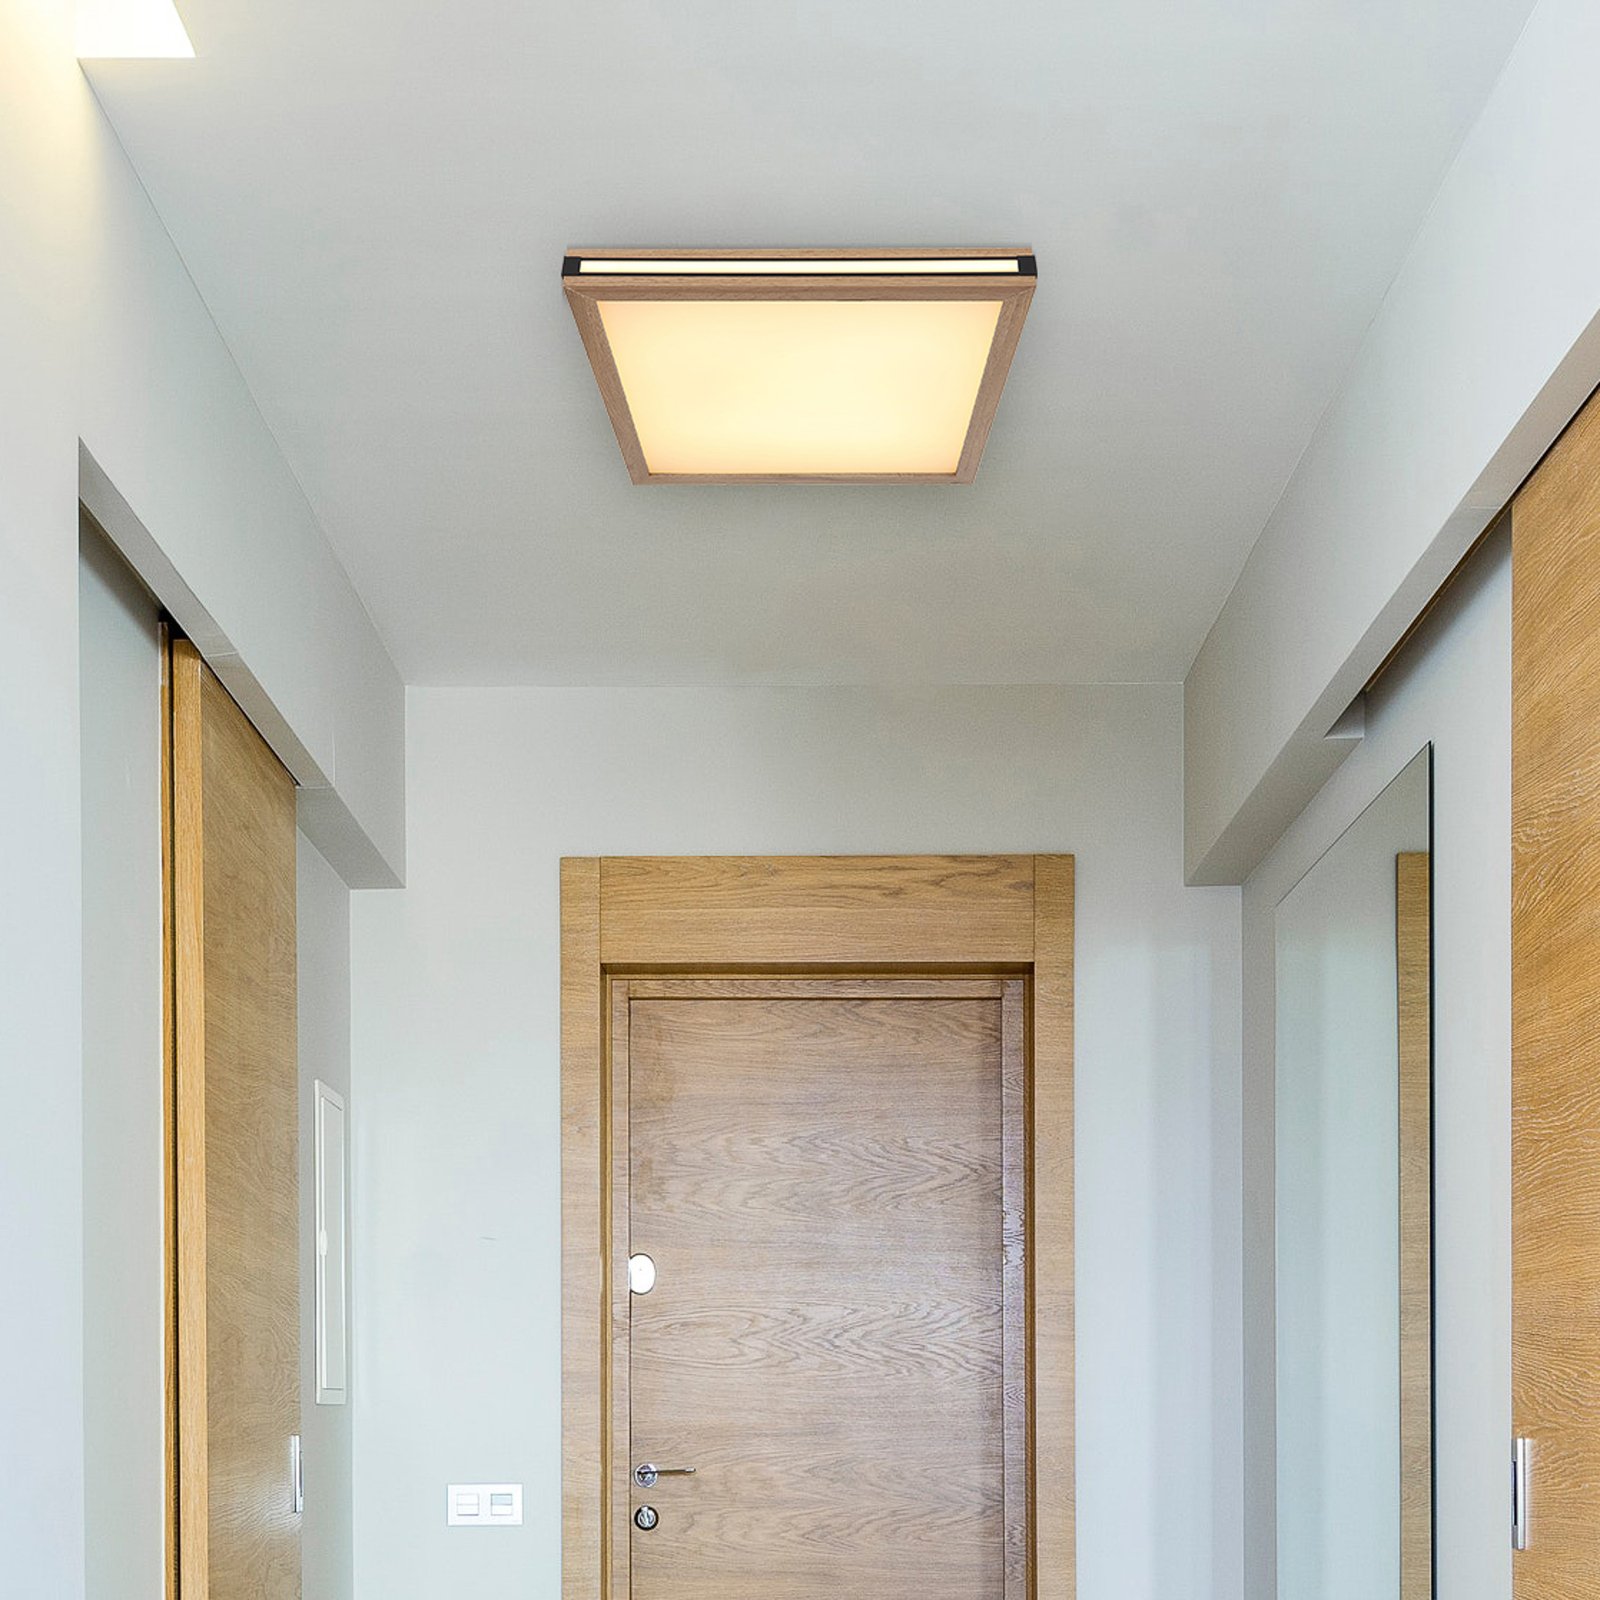 LED ceiling light Karla square 45x45 cm